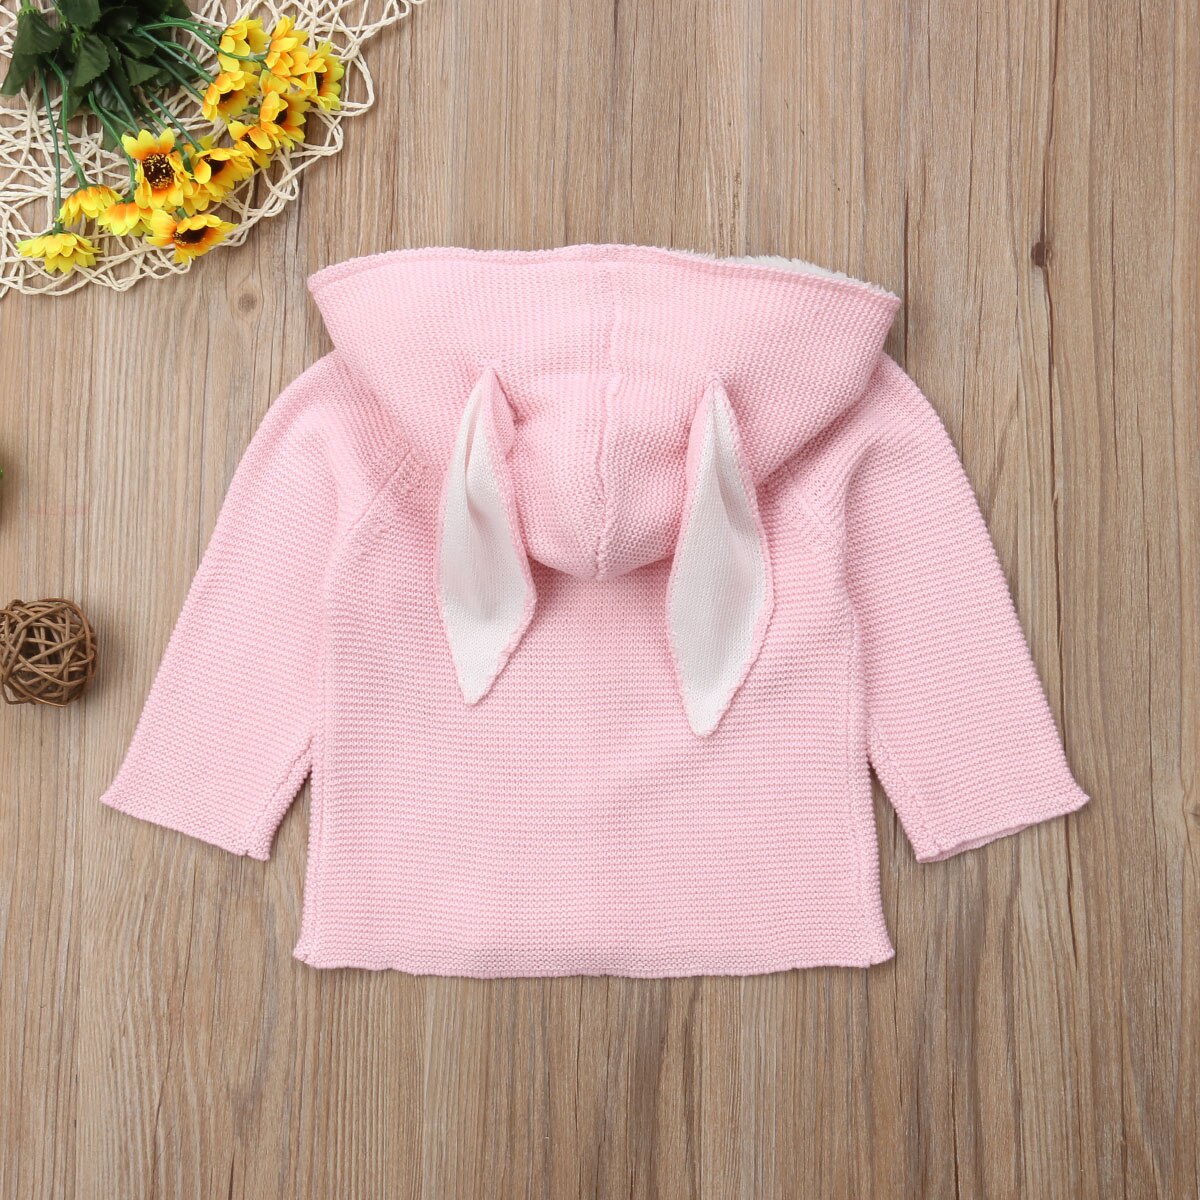 Baby piger strikket sweater cardigans frakke varm bomuld efterår overtøj tøj nyfødt barn baby pige dreng tøj 0-24m